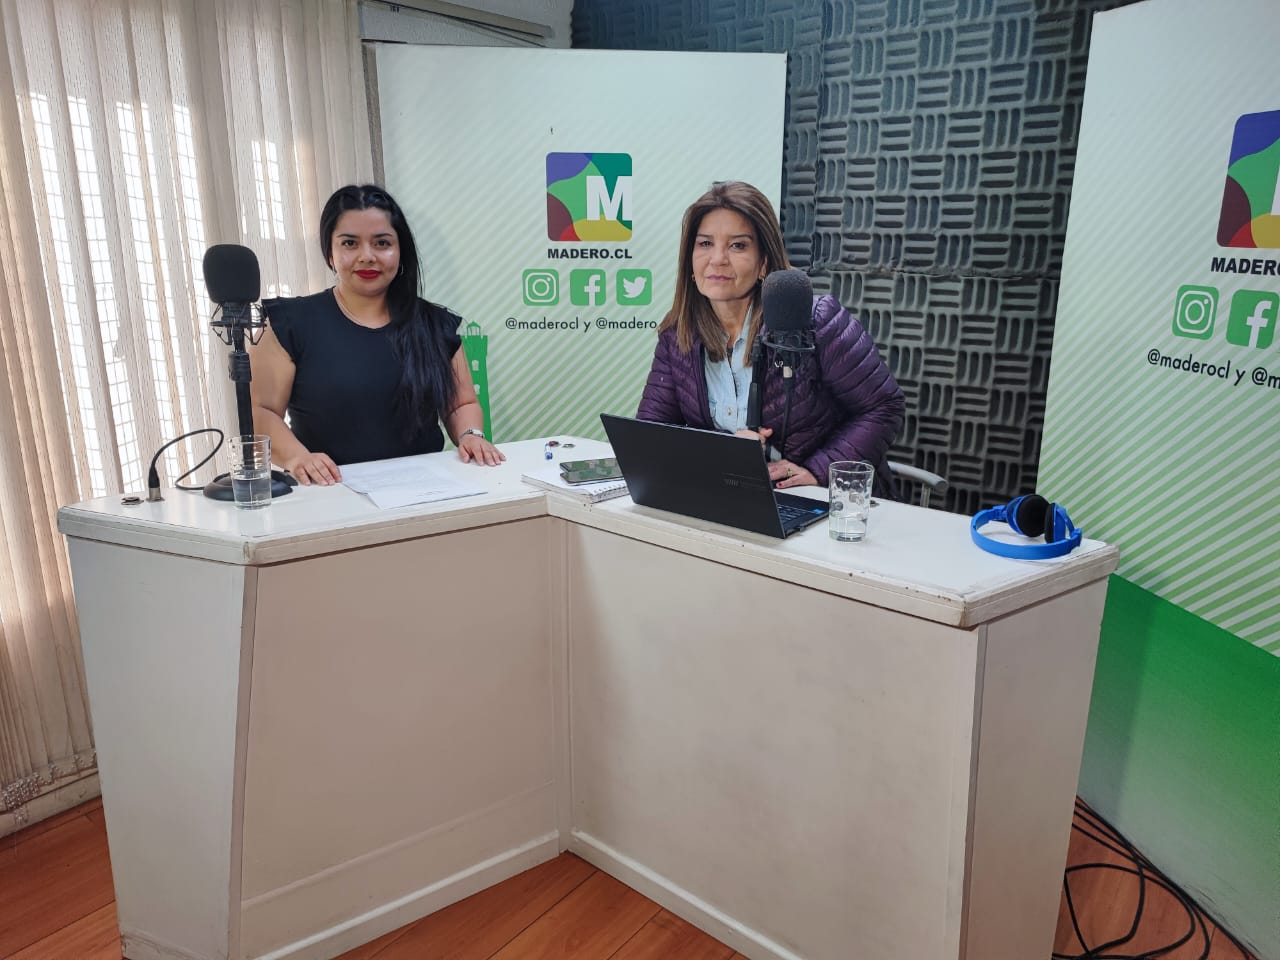 Programa “La niñez y adolescencia se defienden” de Antofagasta es invitado a Radio Madero